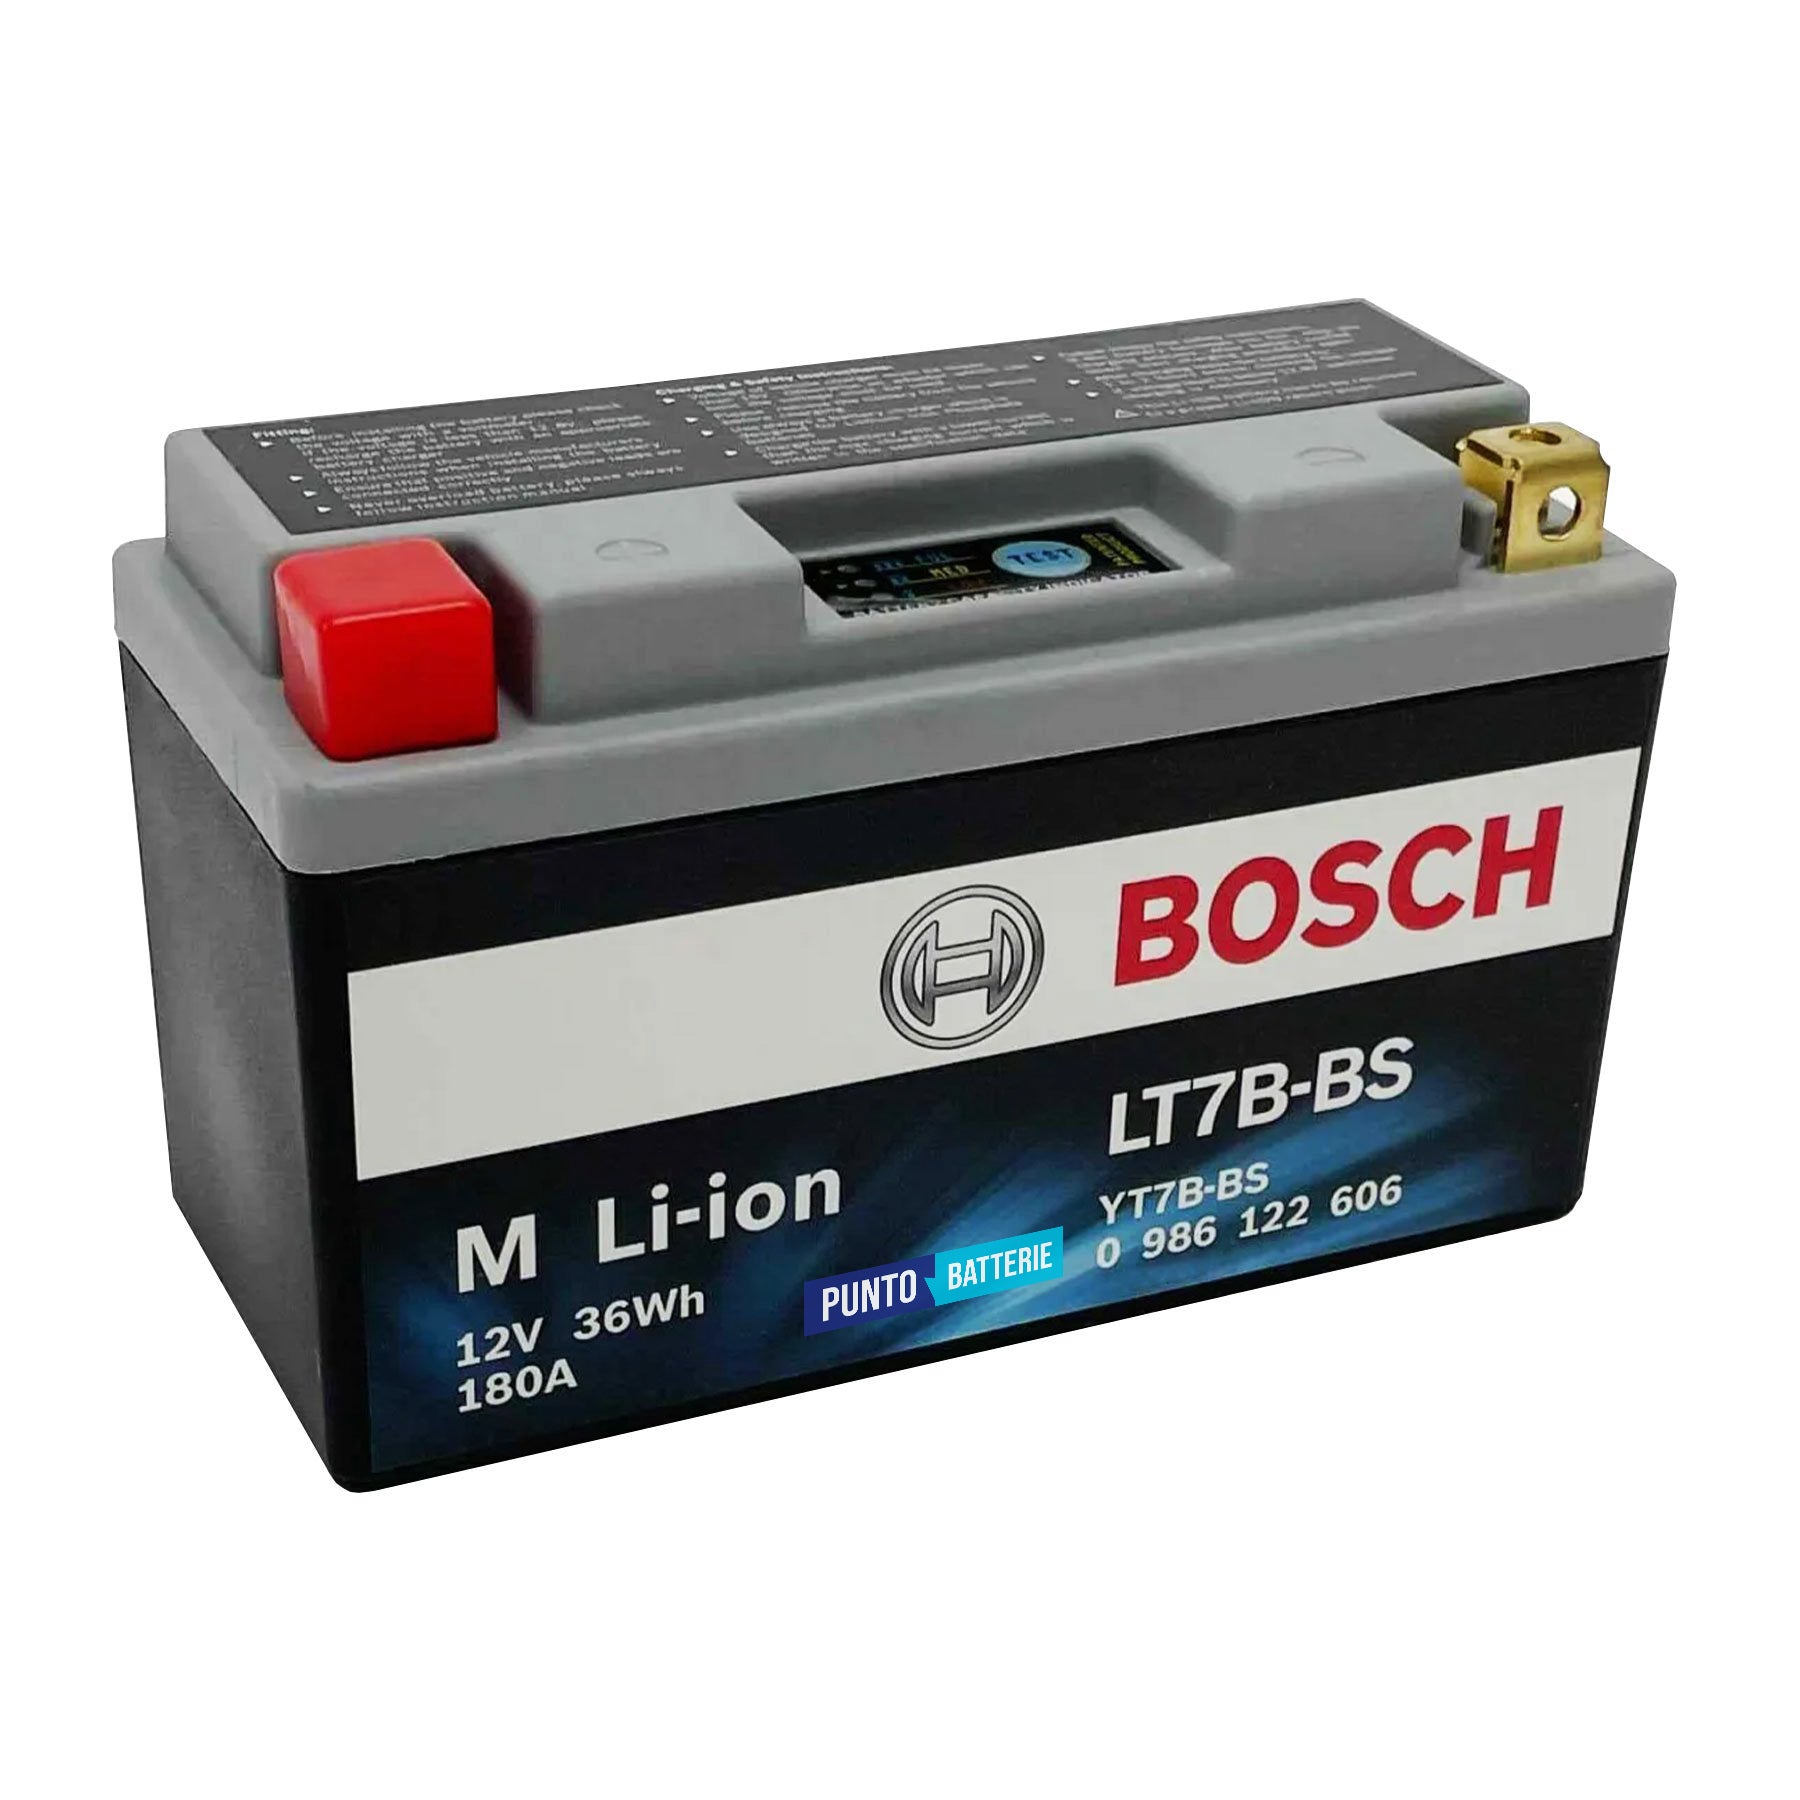 Batteria originale Bosch M Li-ion LT7B-BS, dimensioni 150 x 65 x 130, polo positivo a sinistra, 12 volt, 3 amperora, 180 ampere. Batteria per moto, scooter e powersport.